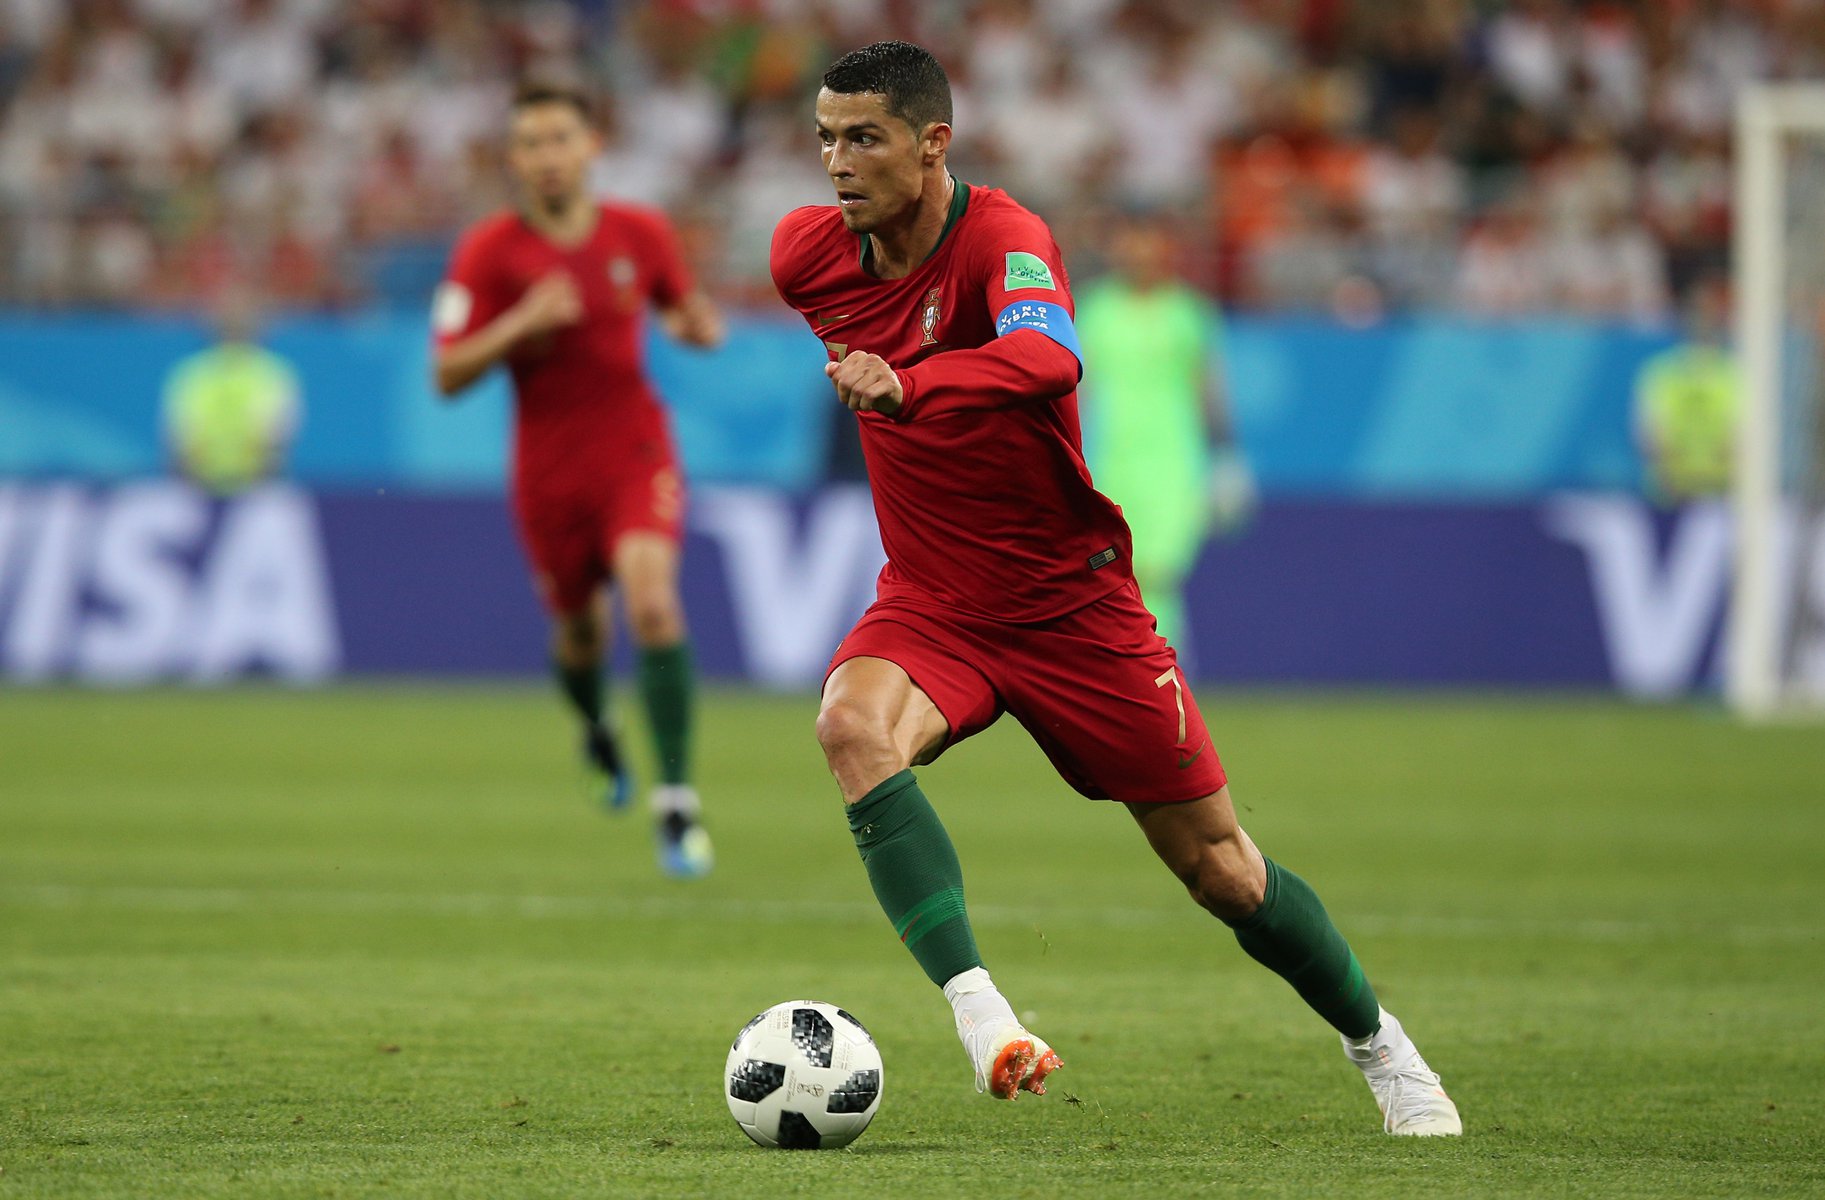 Ο μπίχλας Cristiano Ronaldo: Έκανε το εσώρουχο του αποθηκευτικό χώρο σνακ – Τι έβγαλε από κει και το έφαγε στο ματς με τη Γκάνα;